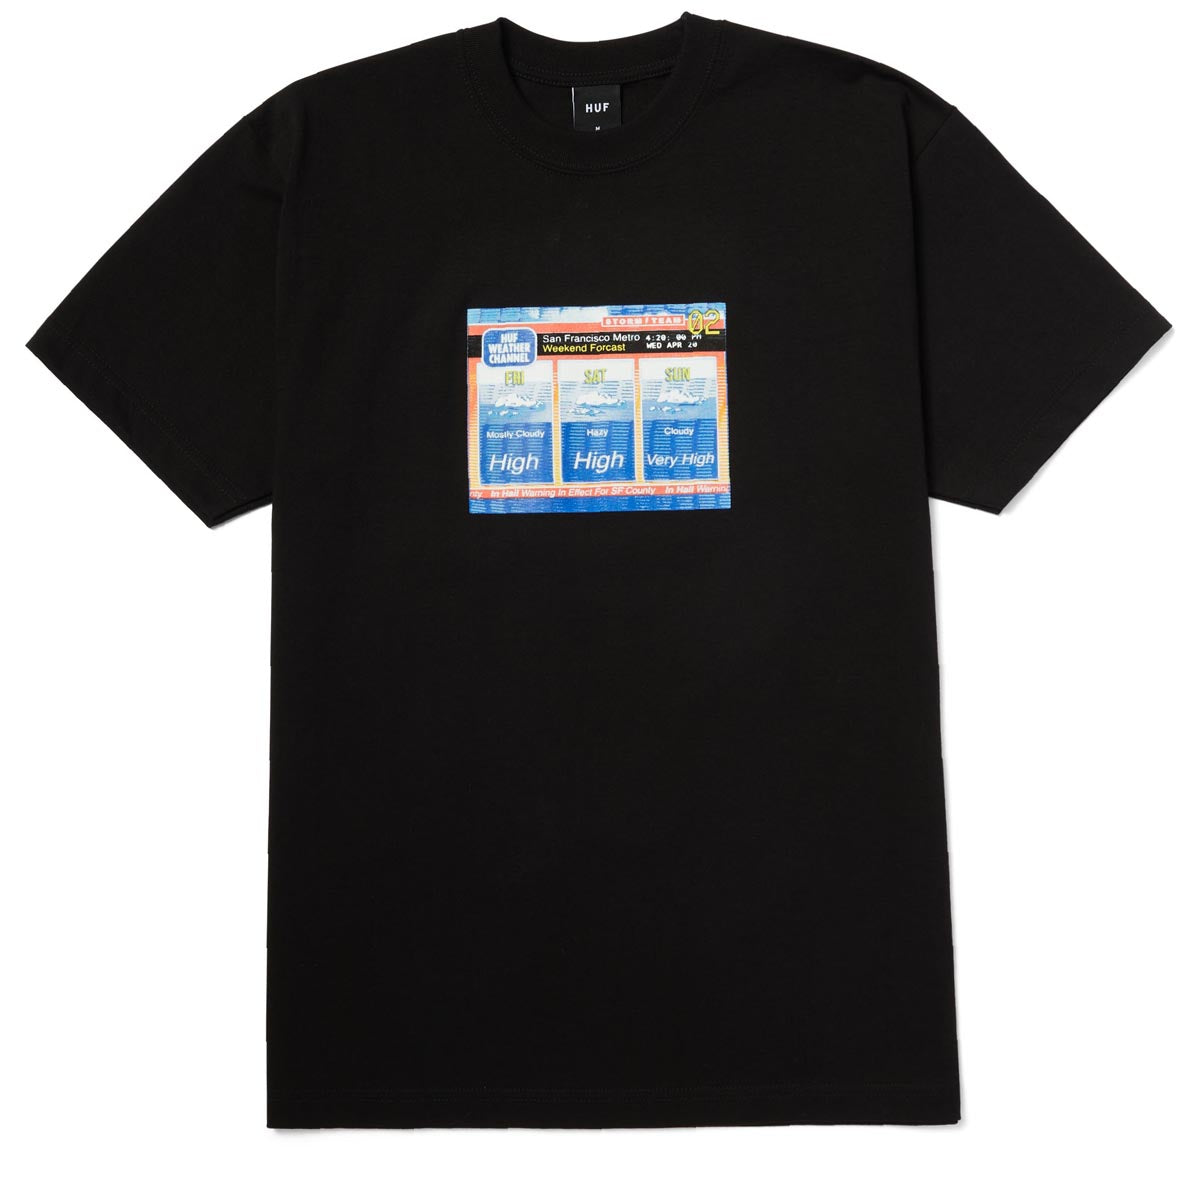 HUF Forecast T-Shirt - Black image 1